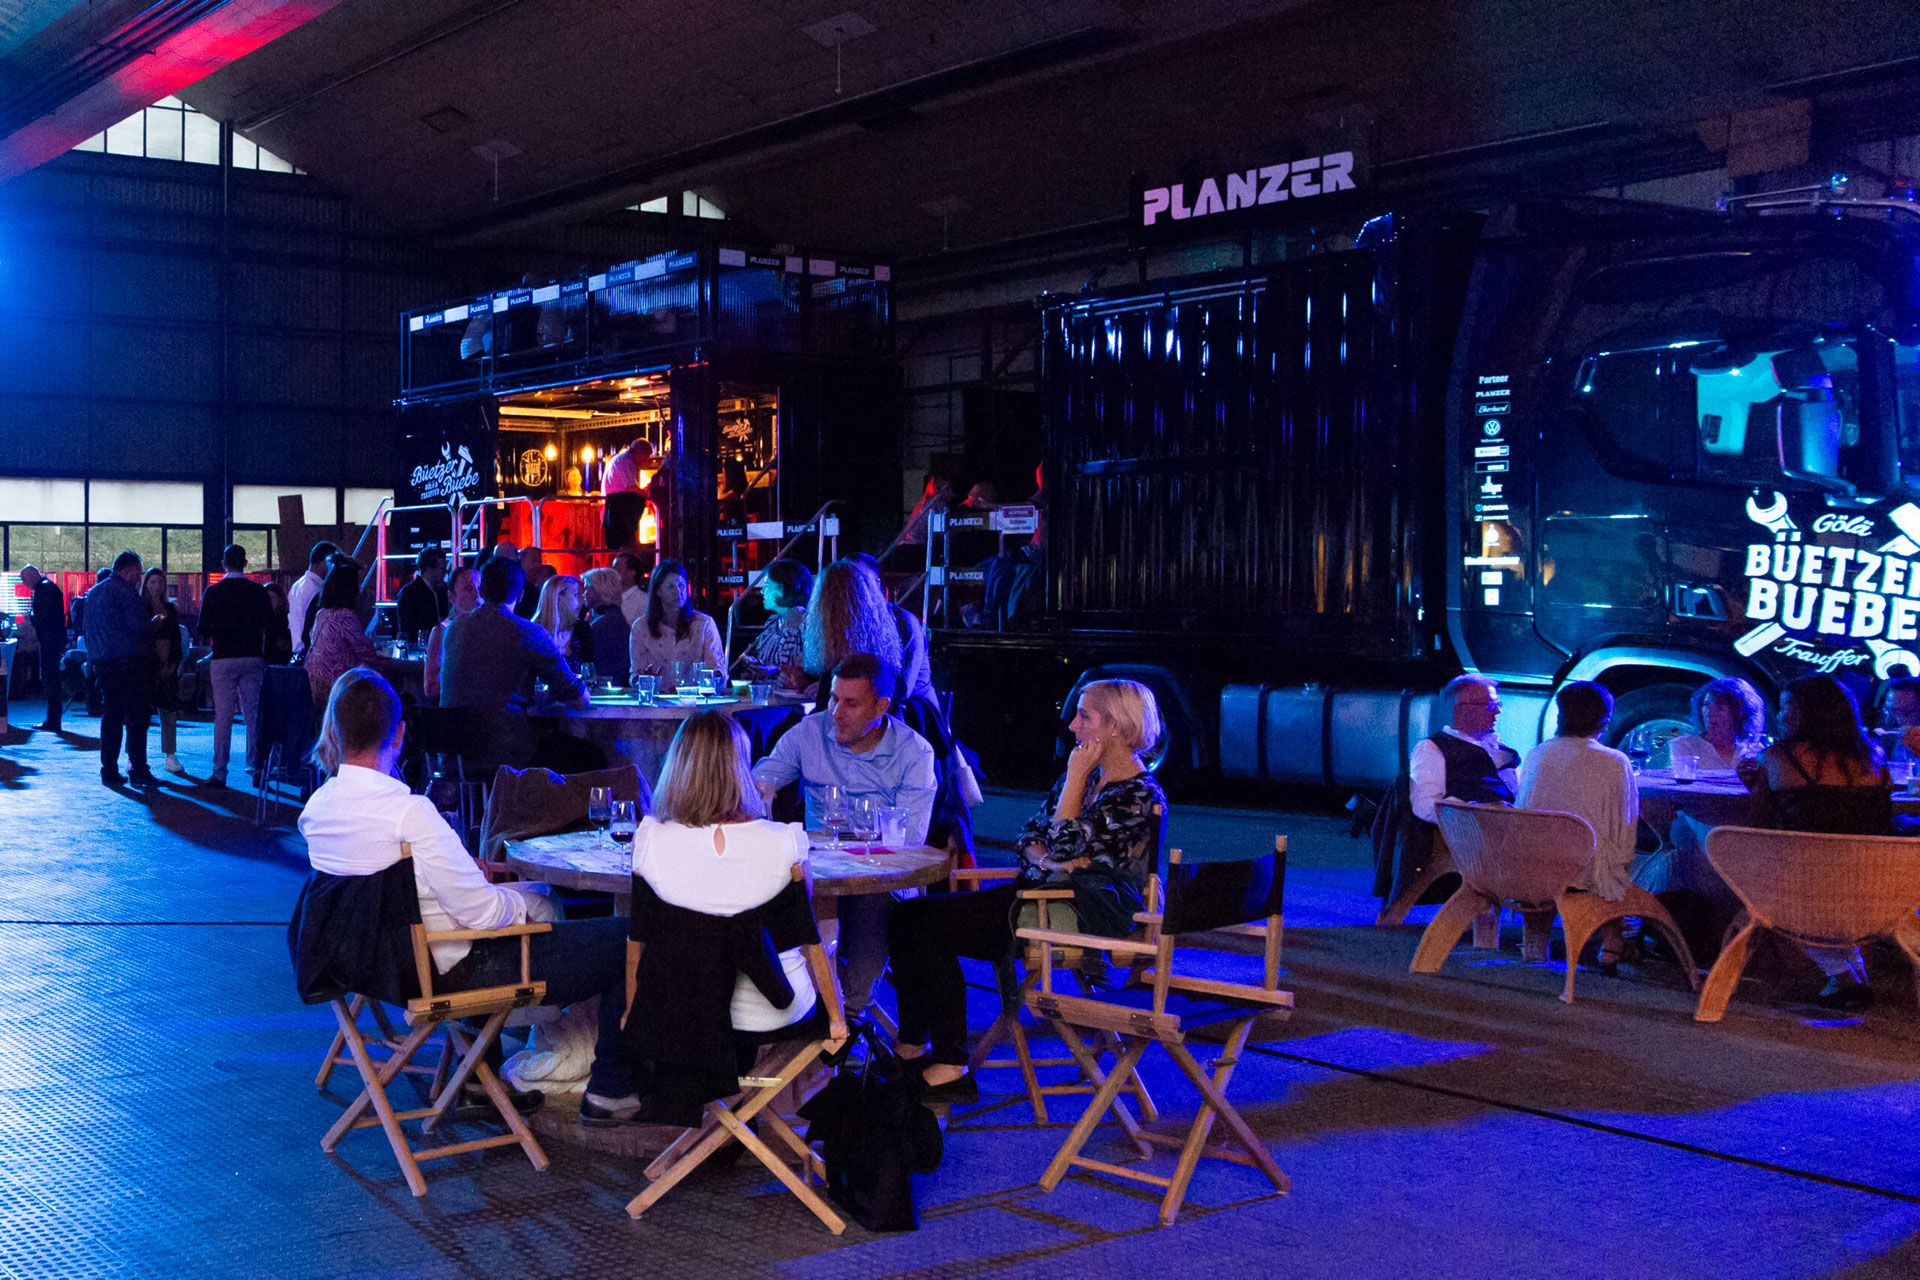 Besucher sitzen und unterhalten sich bei einem Abendevent vor einem beleuchteten Planzer Event-Truck in einer Industrieumgebung.